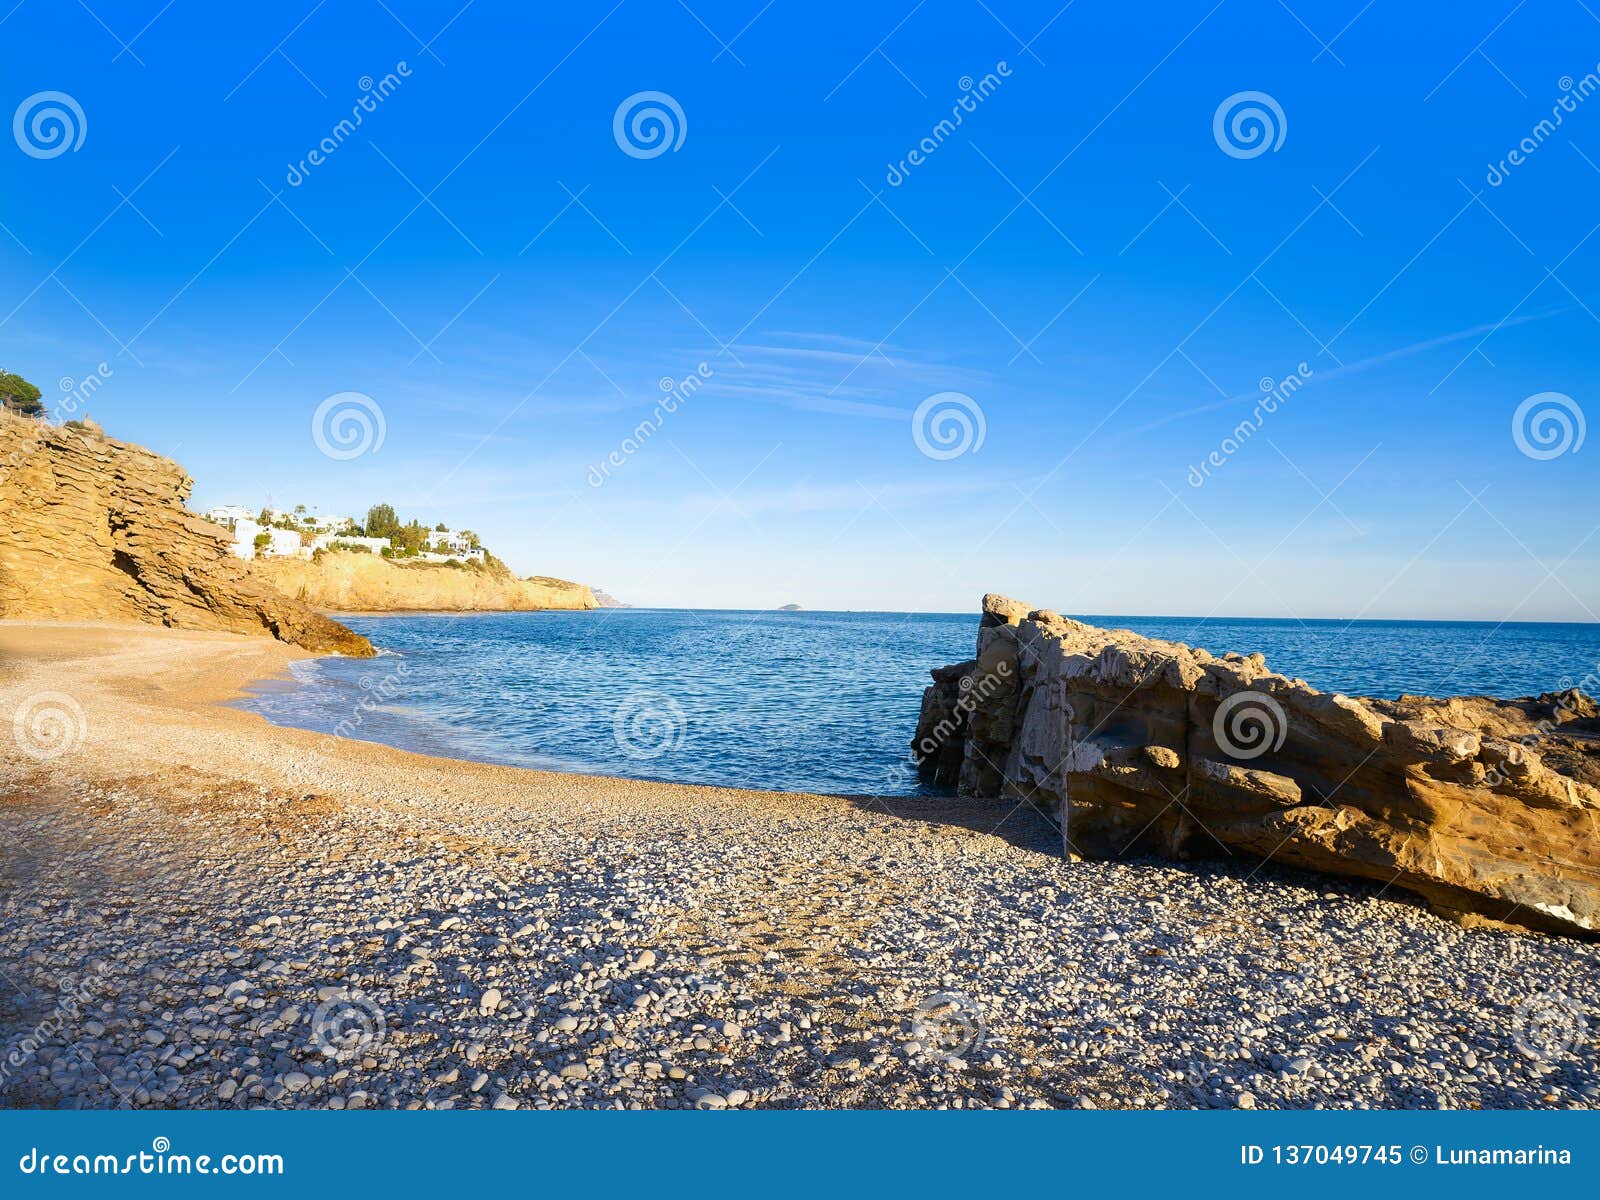 la caleta beach playa in villajoyosa of alicante